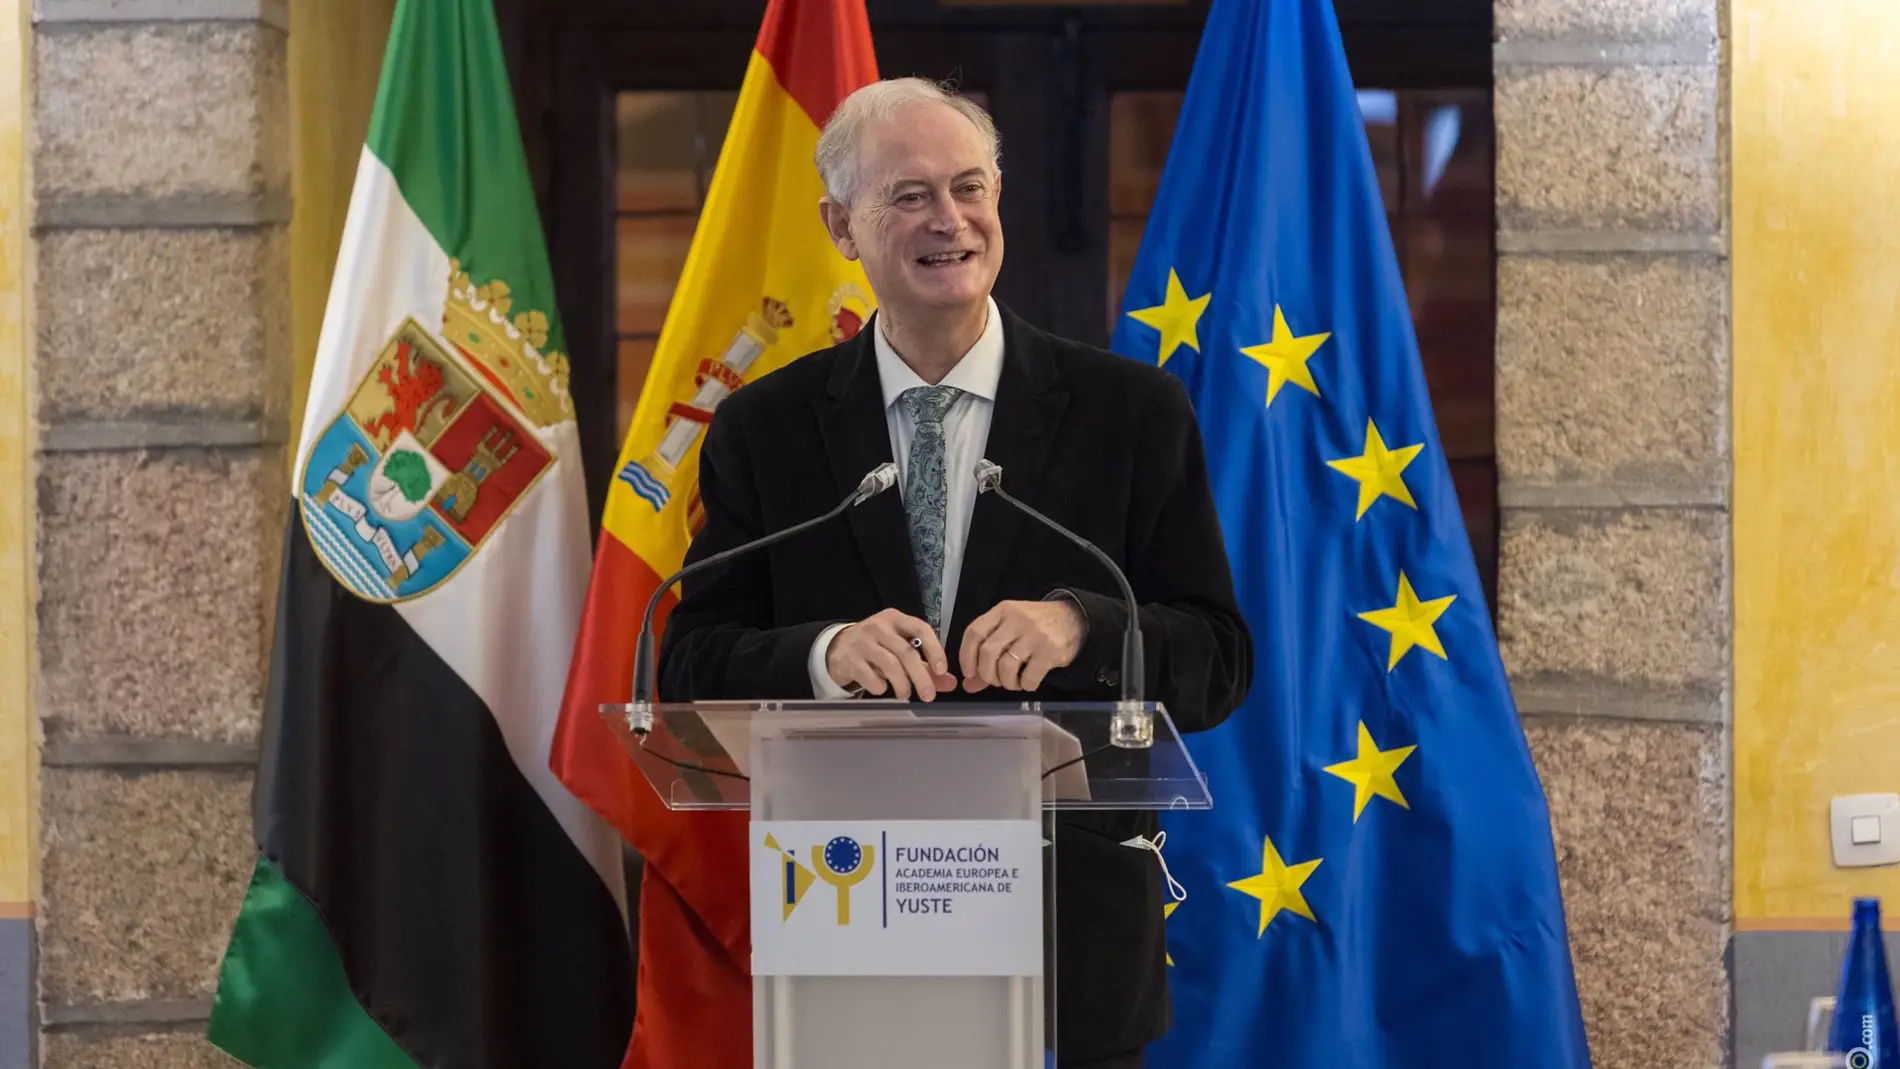 El Profesor Enrique Moradiellos ocupará el sillón Heródoto de Halicarnaso de la Academia Europea e Iberoamericana de Yuste